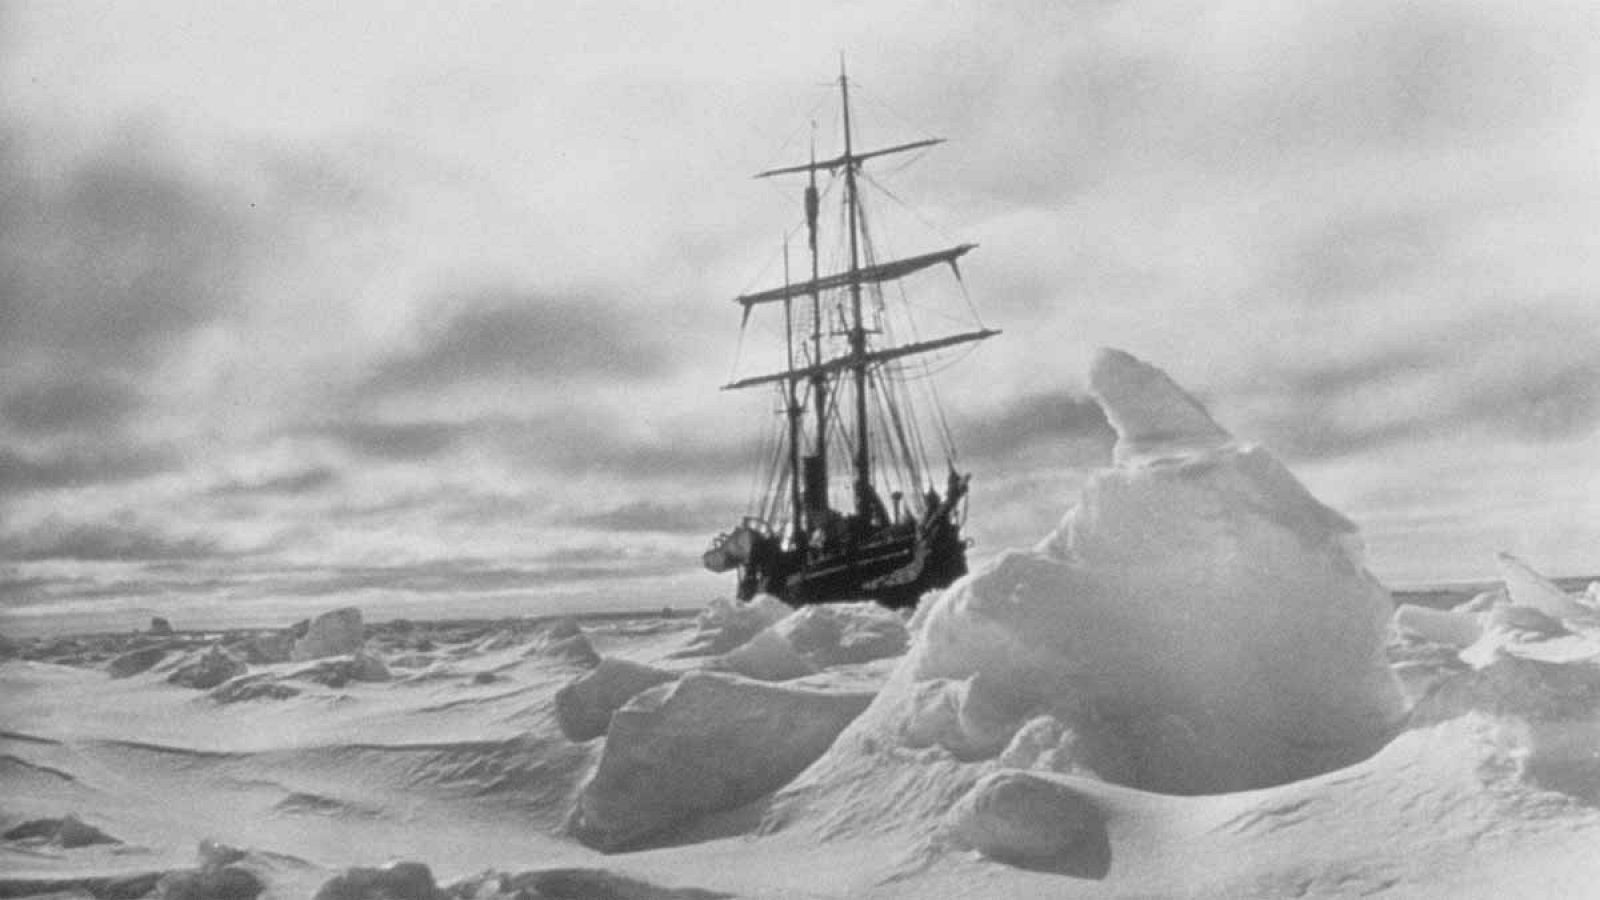 Perdidos en la Antártida: El Endurance de Ernest Shackleton aprisionado en el hielo antártico